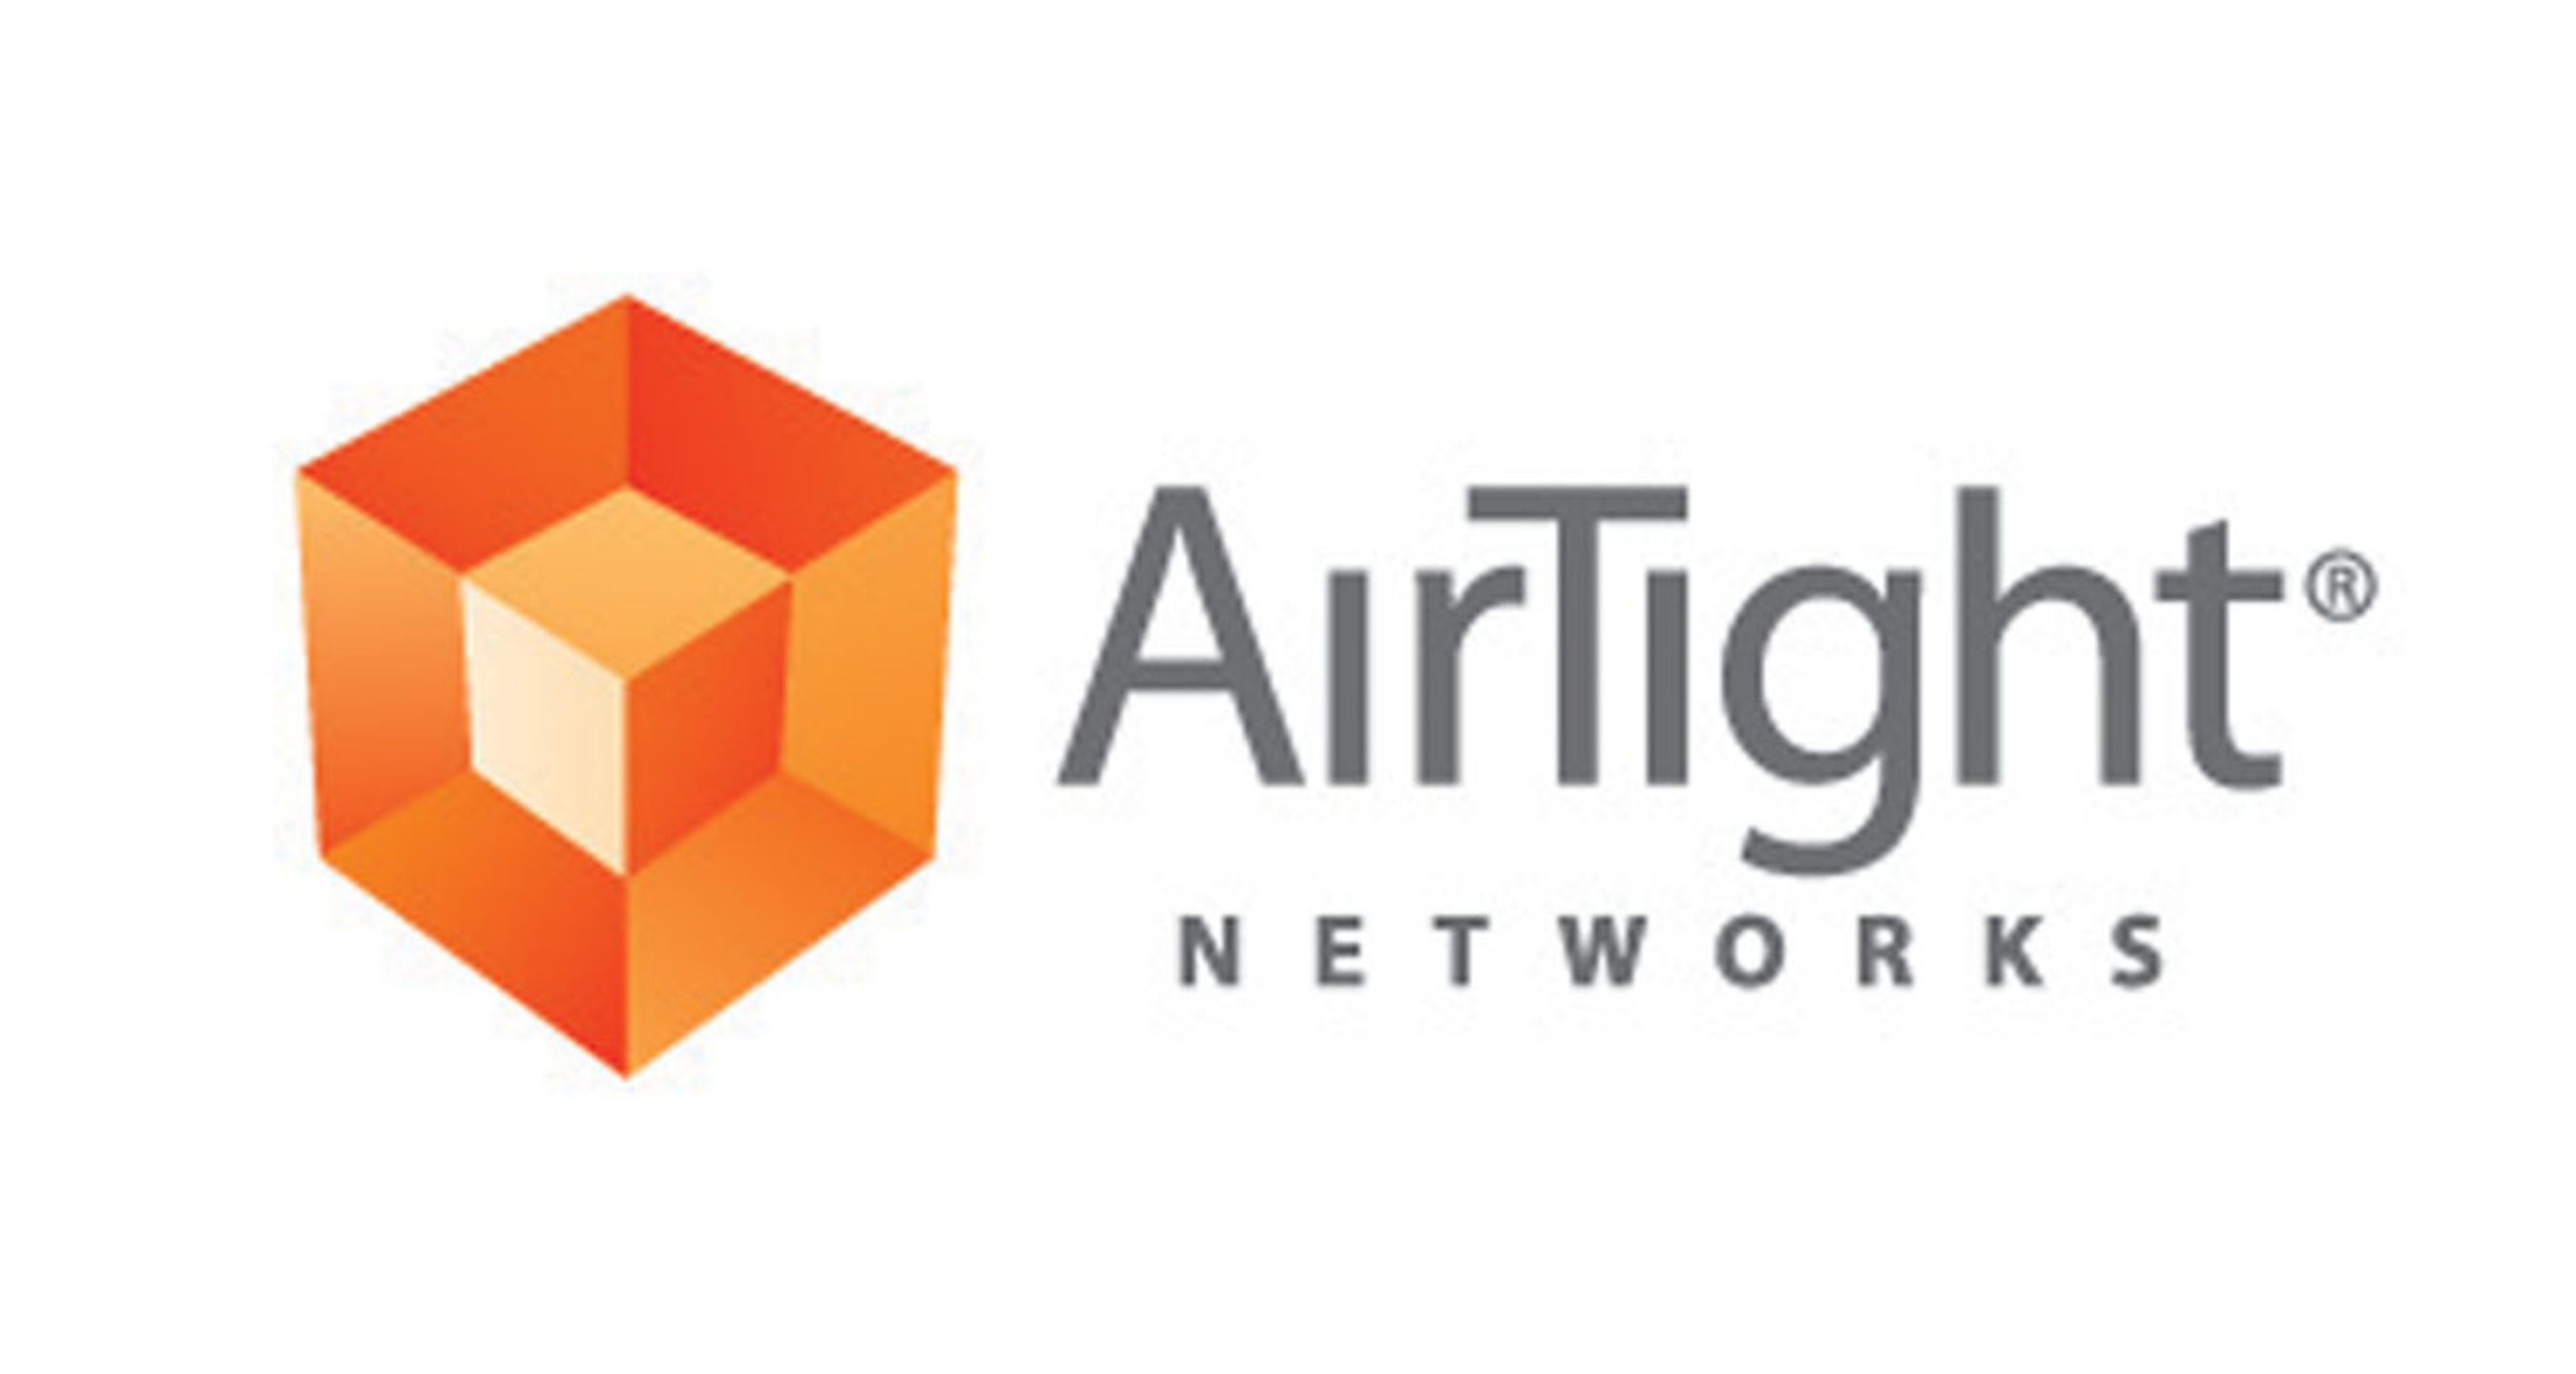 AirTight Networks logo. (PRNewsFoto/AirTight Networks) (PRNewsFoto/)